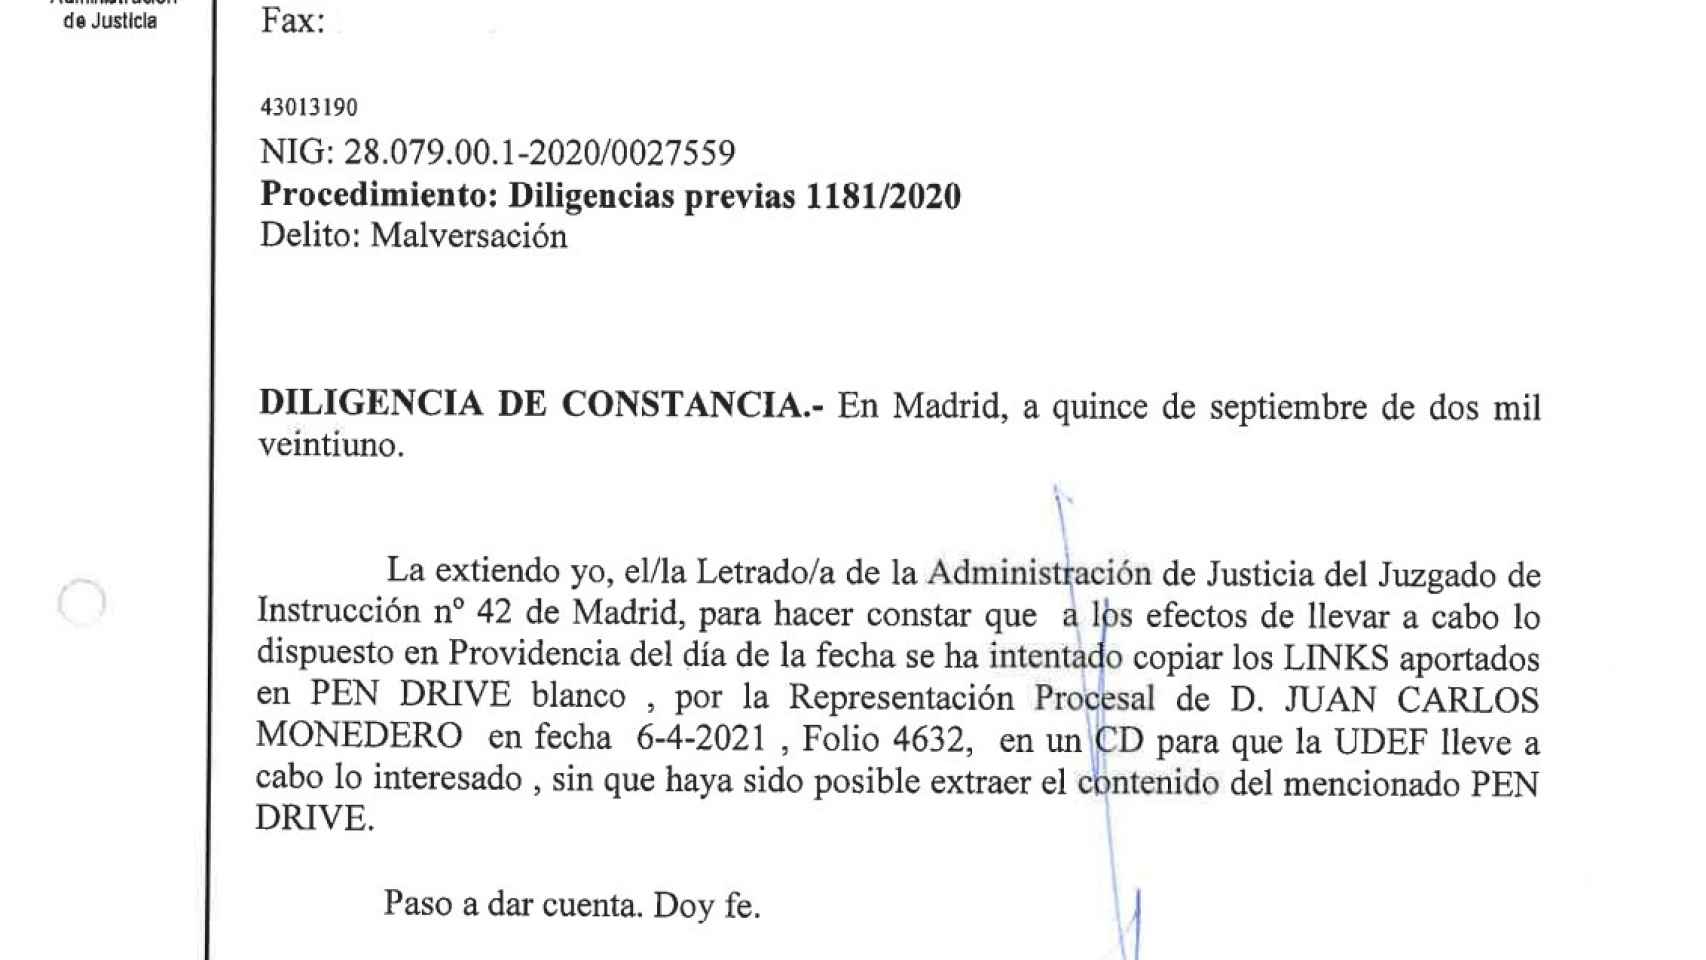 El Juzgado no logra abrir el pendrive aportado por Juan Carlos Monedero.